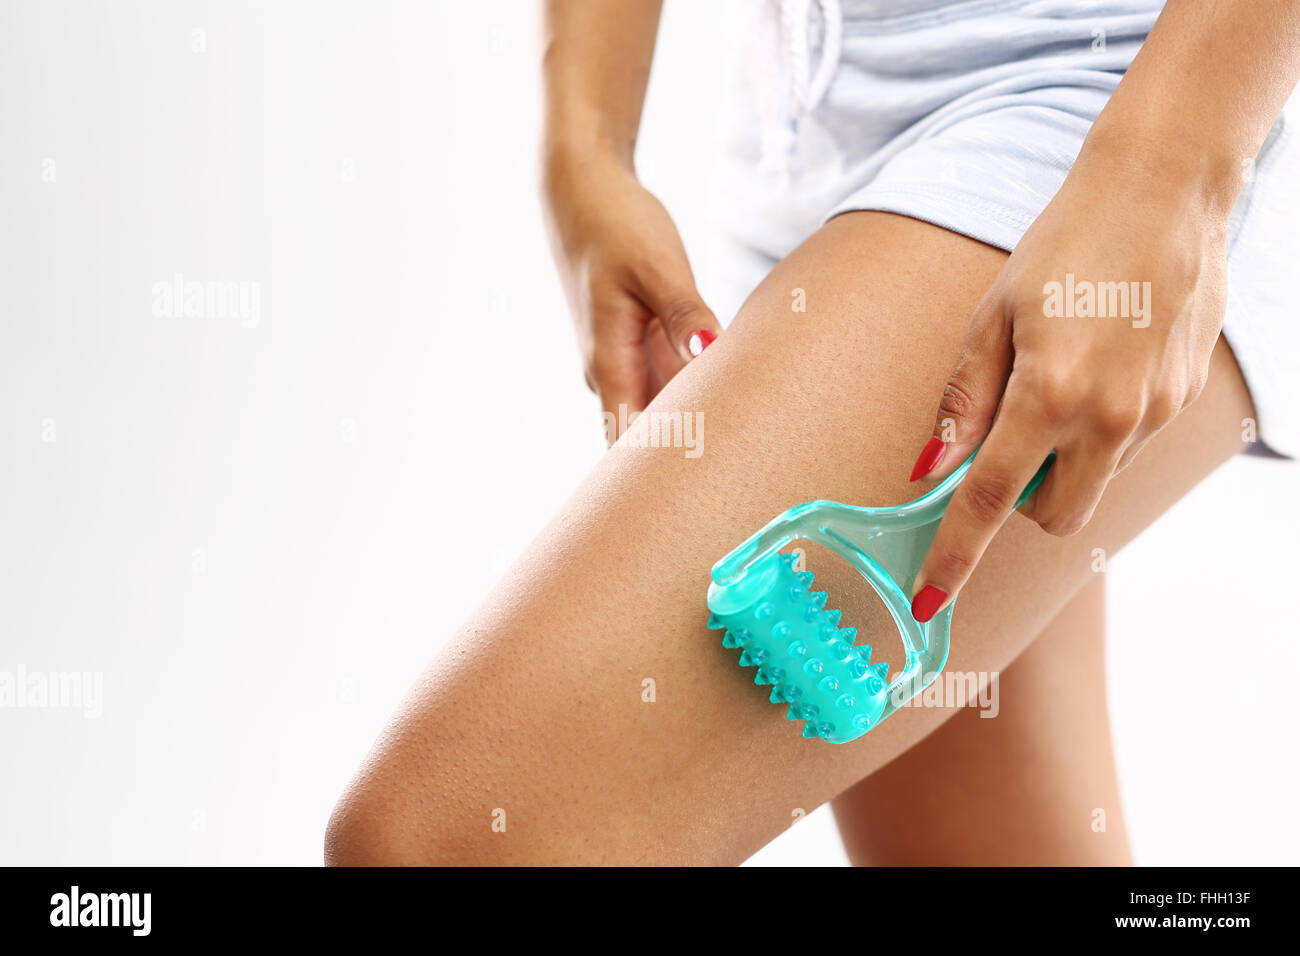 Anti Cellulite Massage Woman Massaging Thigh Massage Roller Stock Photo Alamy